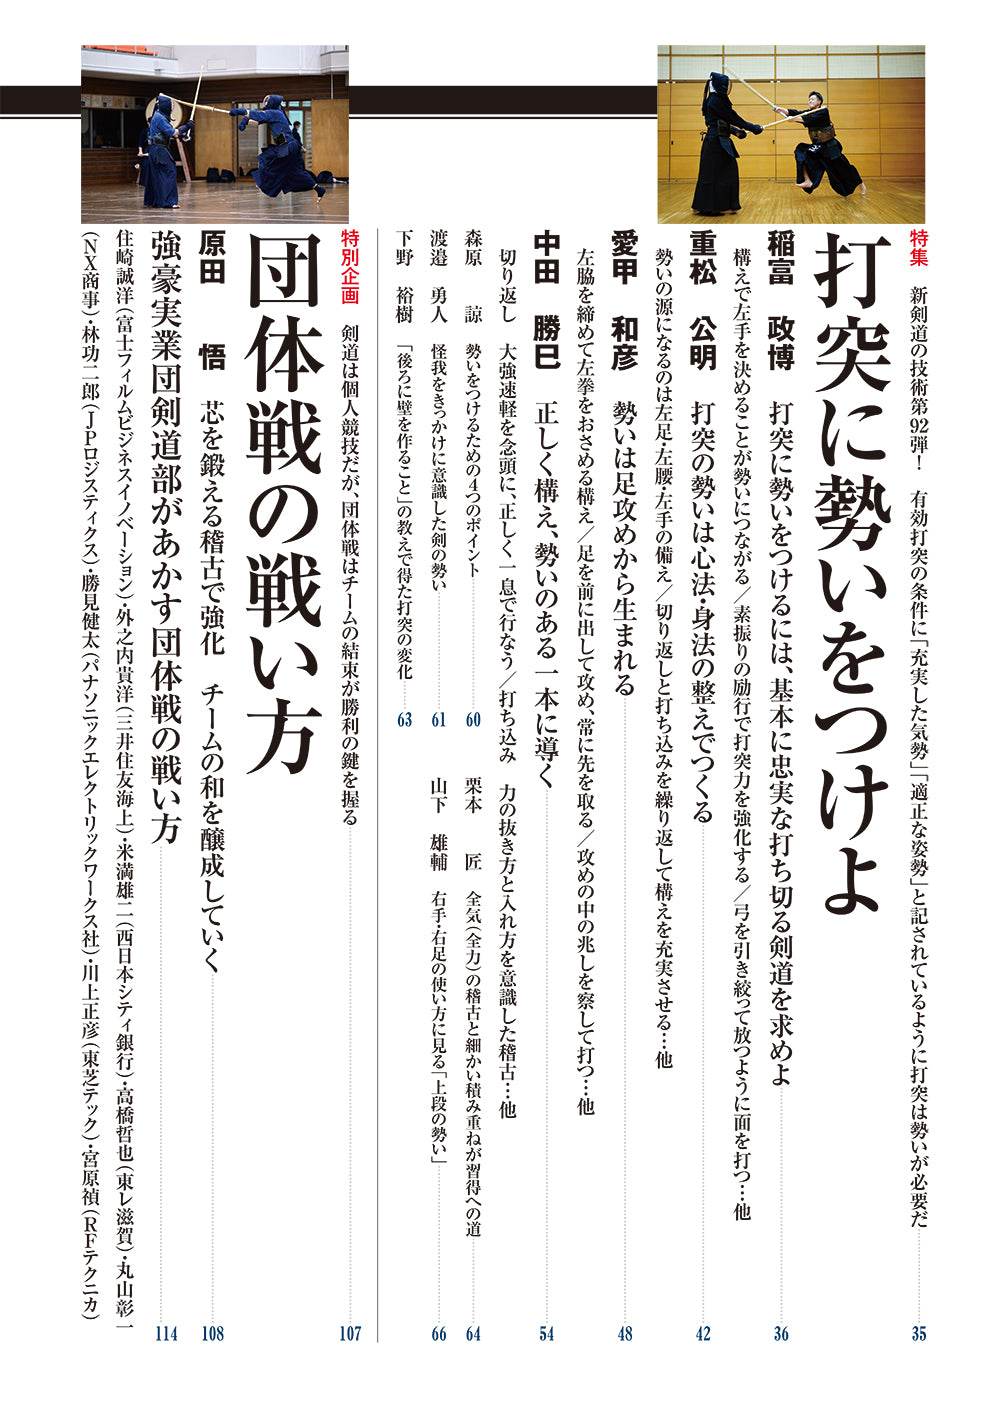 剣道日本2014年11月号  形稽古の効き目 日本剣道形、基本技稽古法◉DVD付